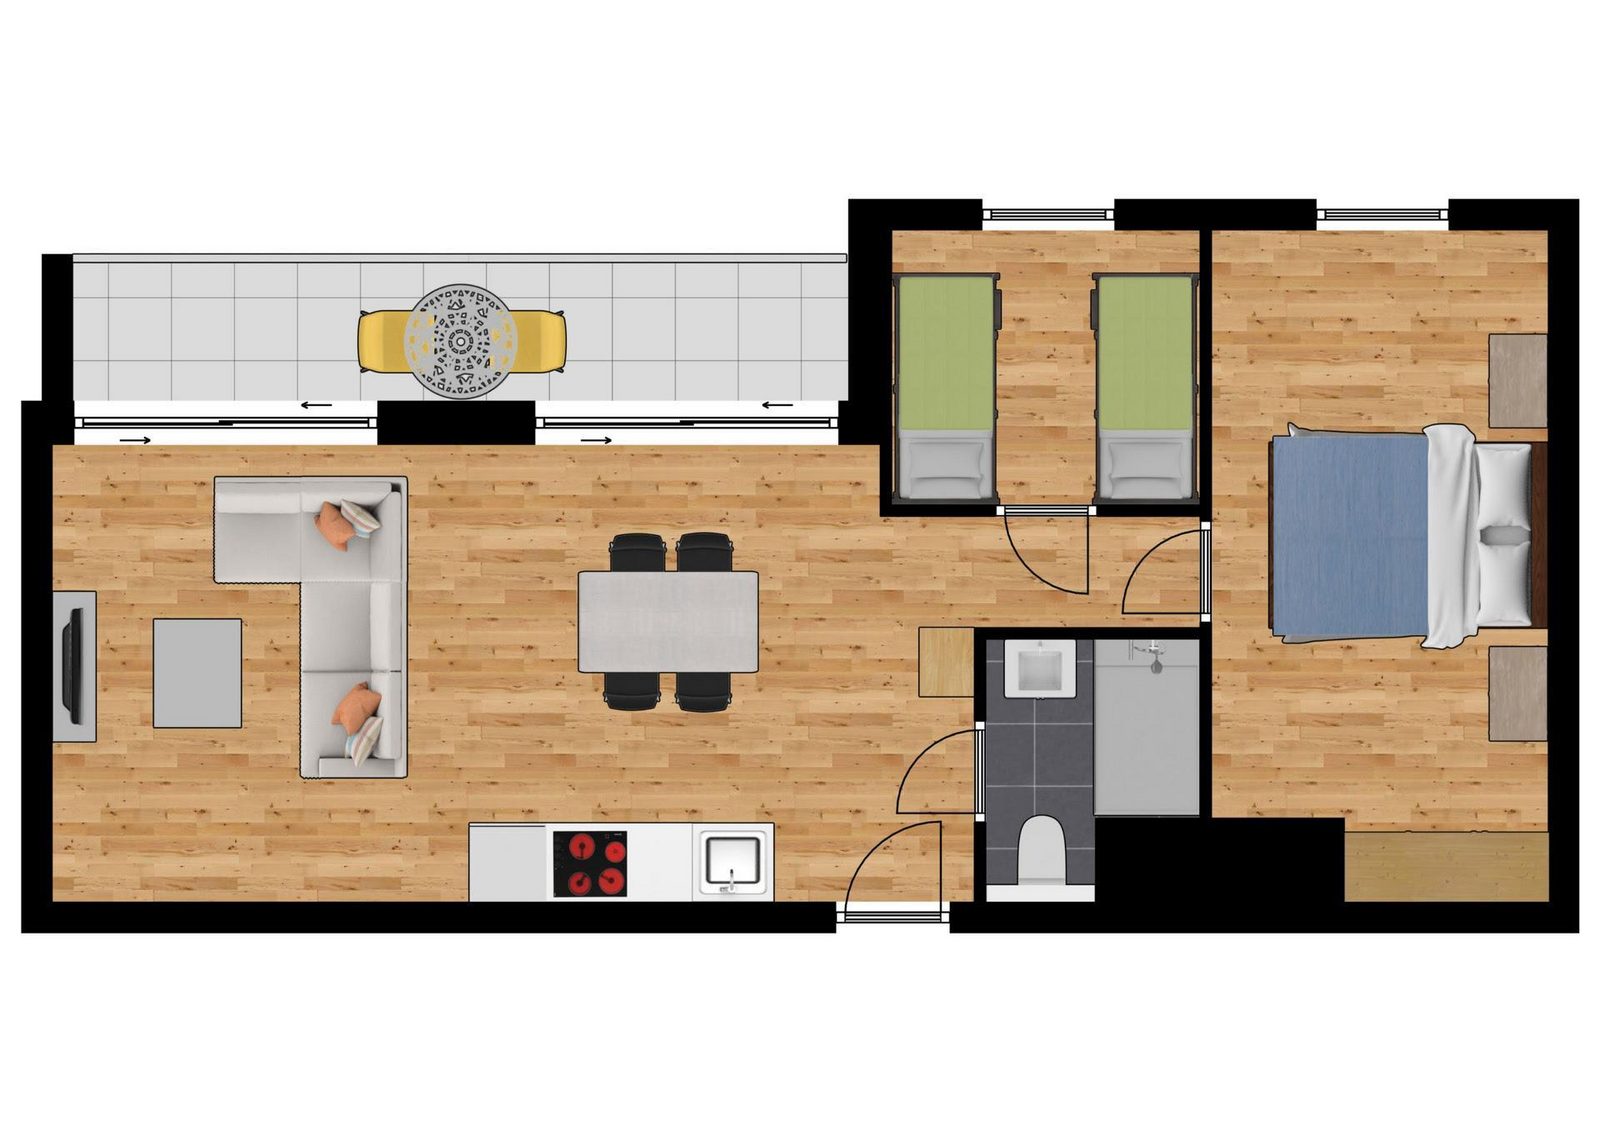 Comfort suite 4p balkon - 2 slaapkamers - 1 dubbel bed - 2 enkele bedden